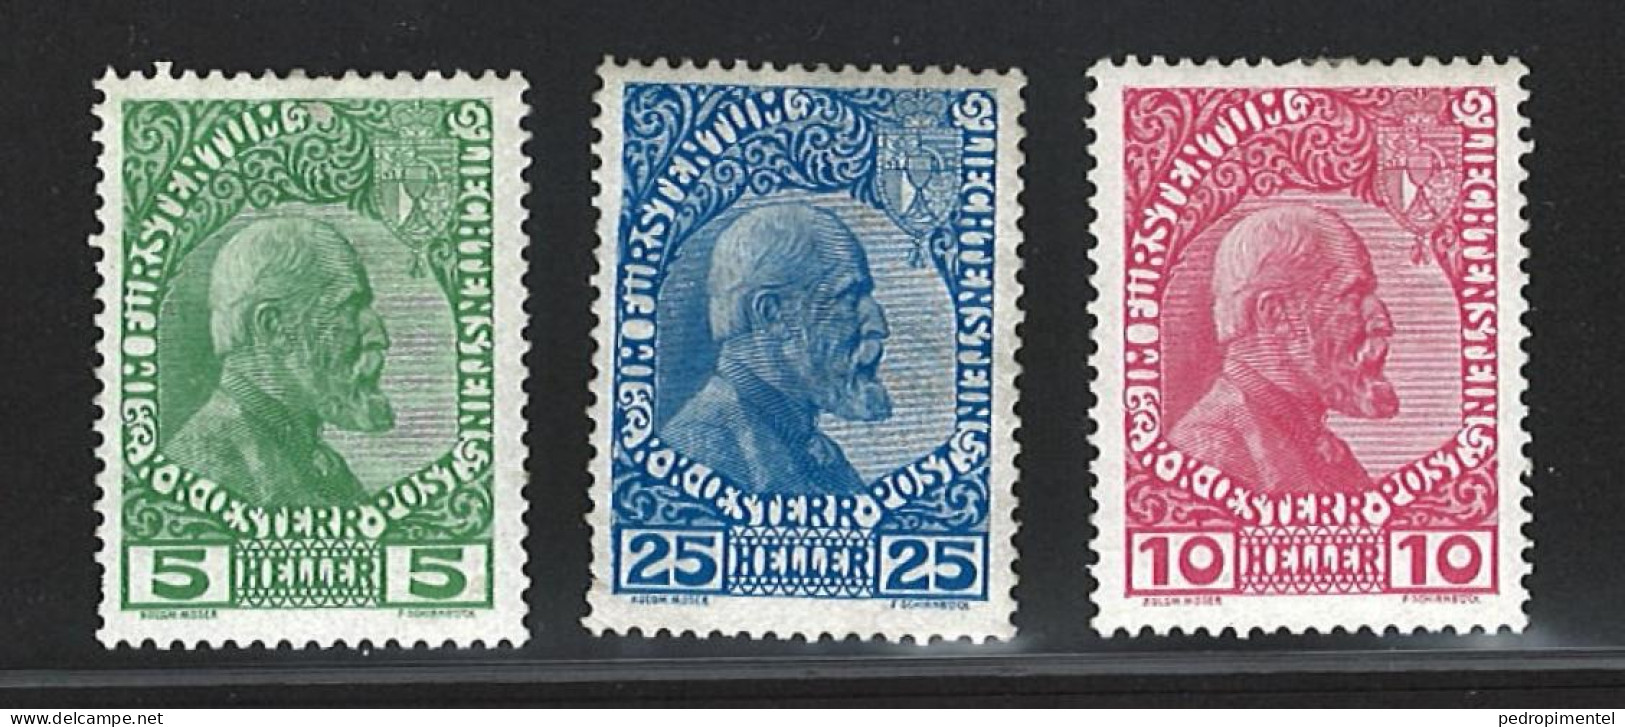 Liechtenstein Stamps | Prince Johan II | Perf 12 1/12 X 13 | #1-3 MH - Ongebruikt